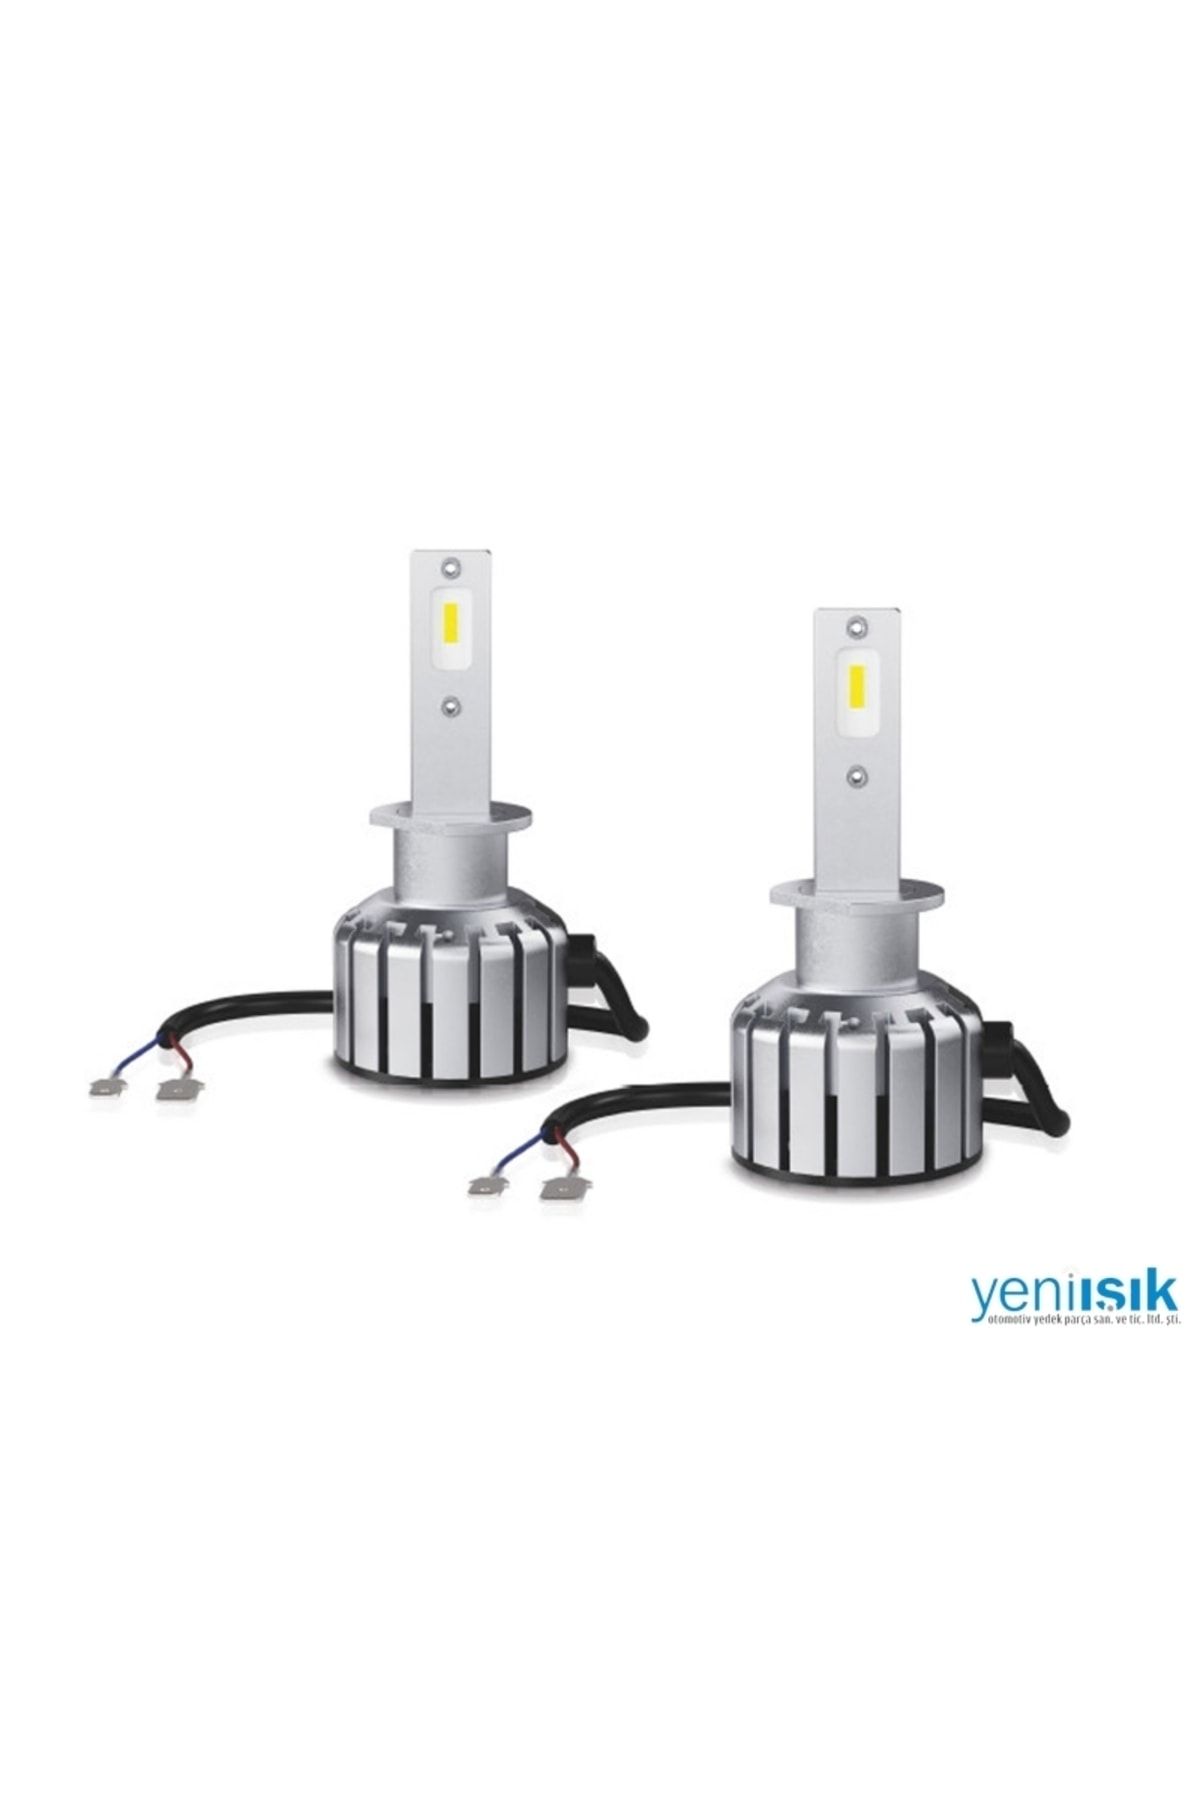 Osram H1 Led Xenon Kit LEDriving HL BRIGHT %300 Fazla Işık / 4 Yıl  Garantili 12V (2 Adet Far İçin) Fiyatı, Yorumları - Trendyol